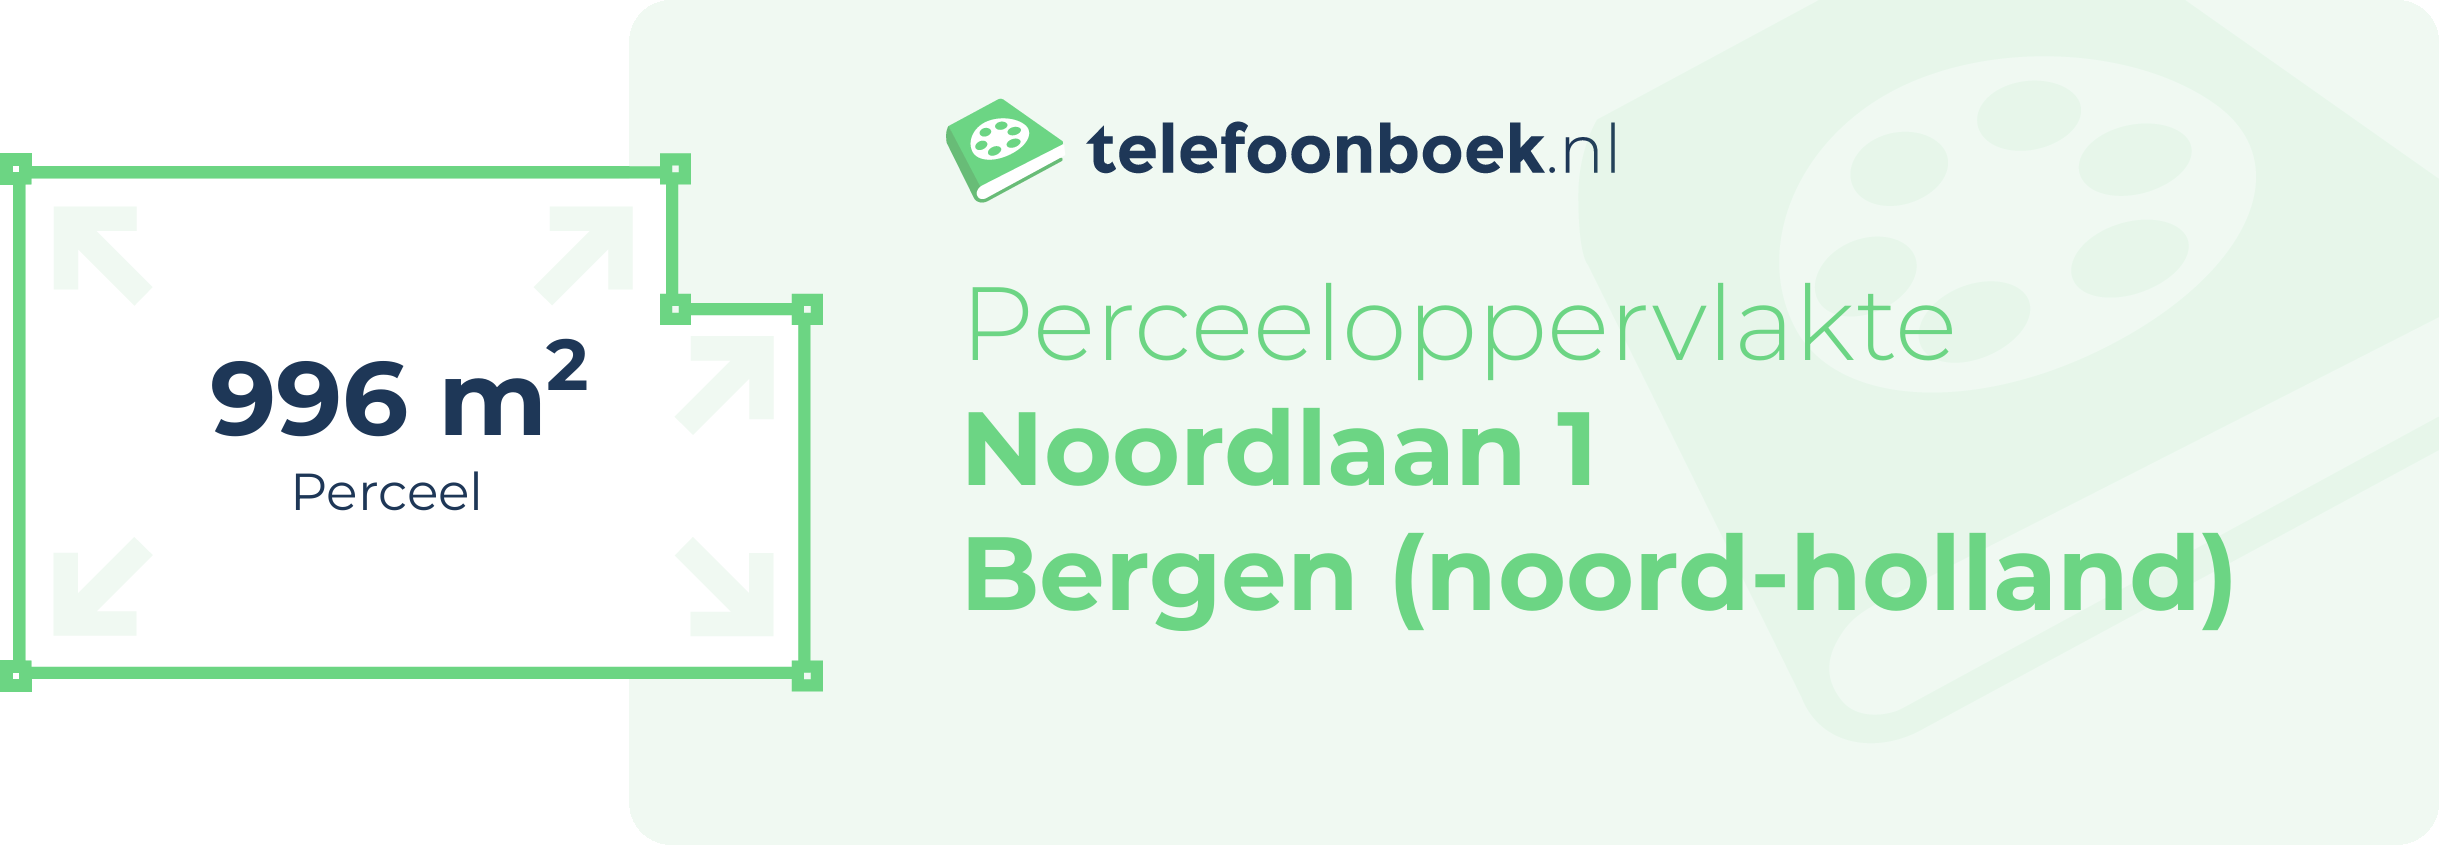 Perceeloppervlakte Noordlaan 1 Bergen (Noord-Holland)